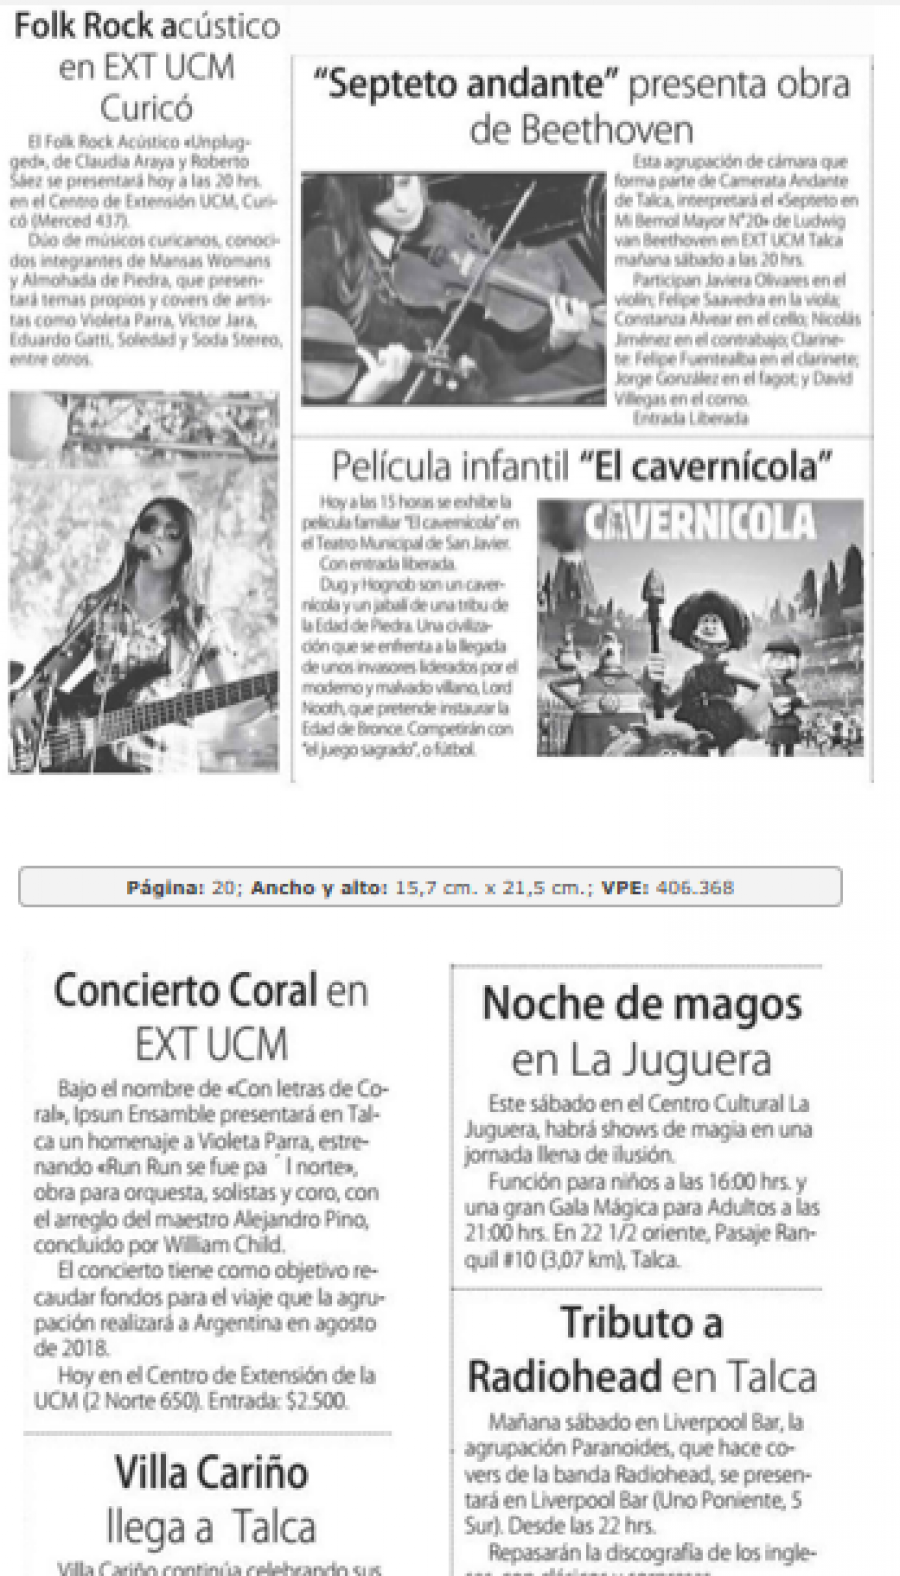 29 de junio en Diario El Centro: “Panoramas culturales”